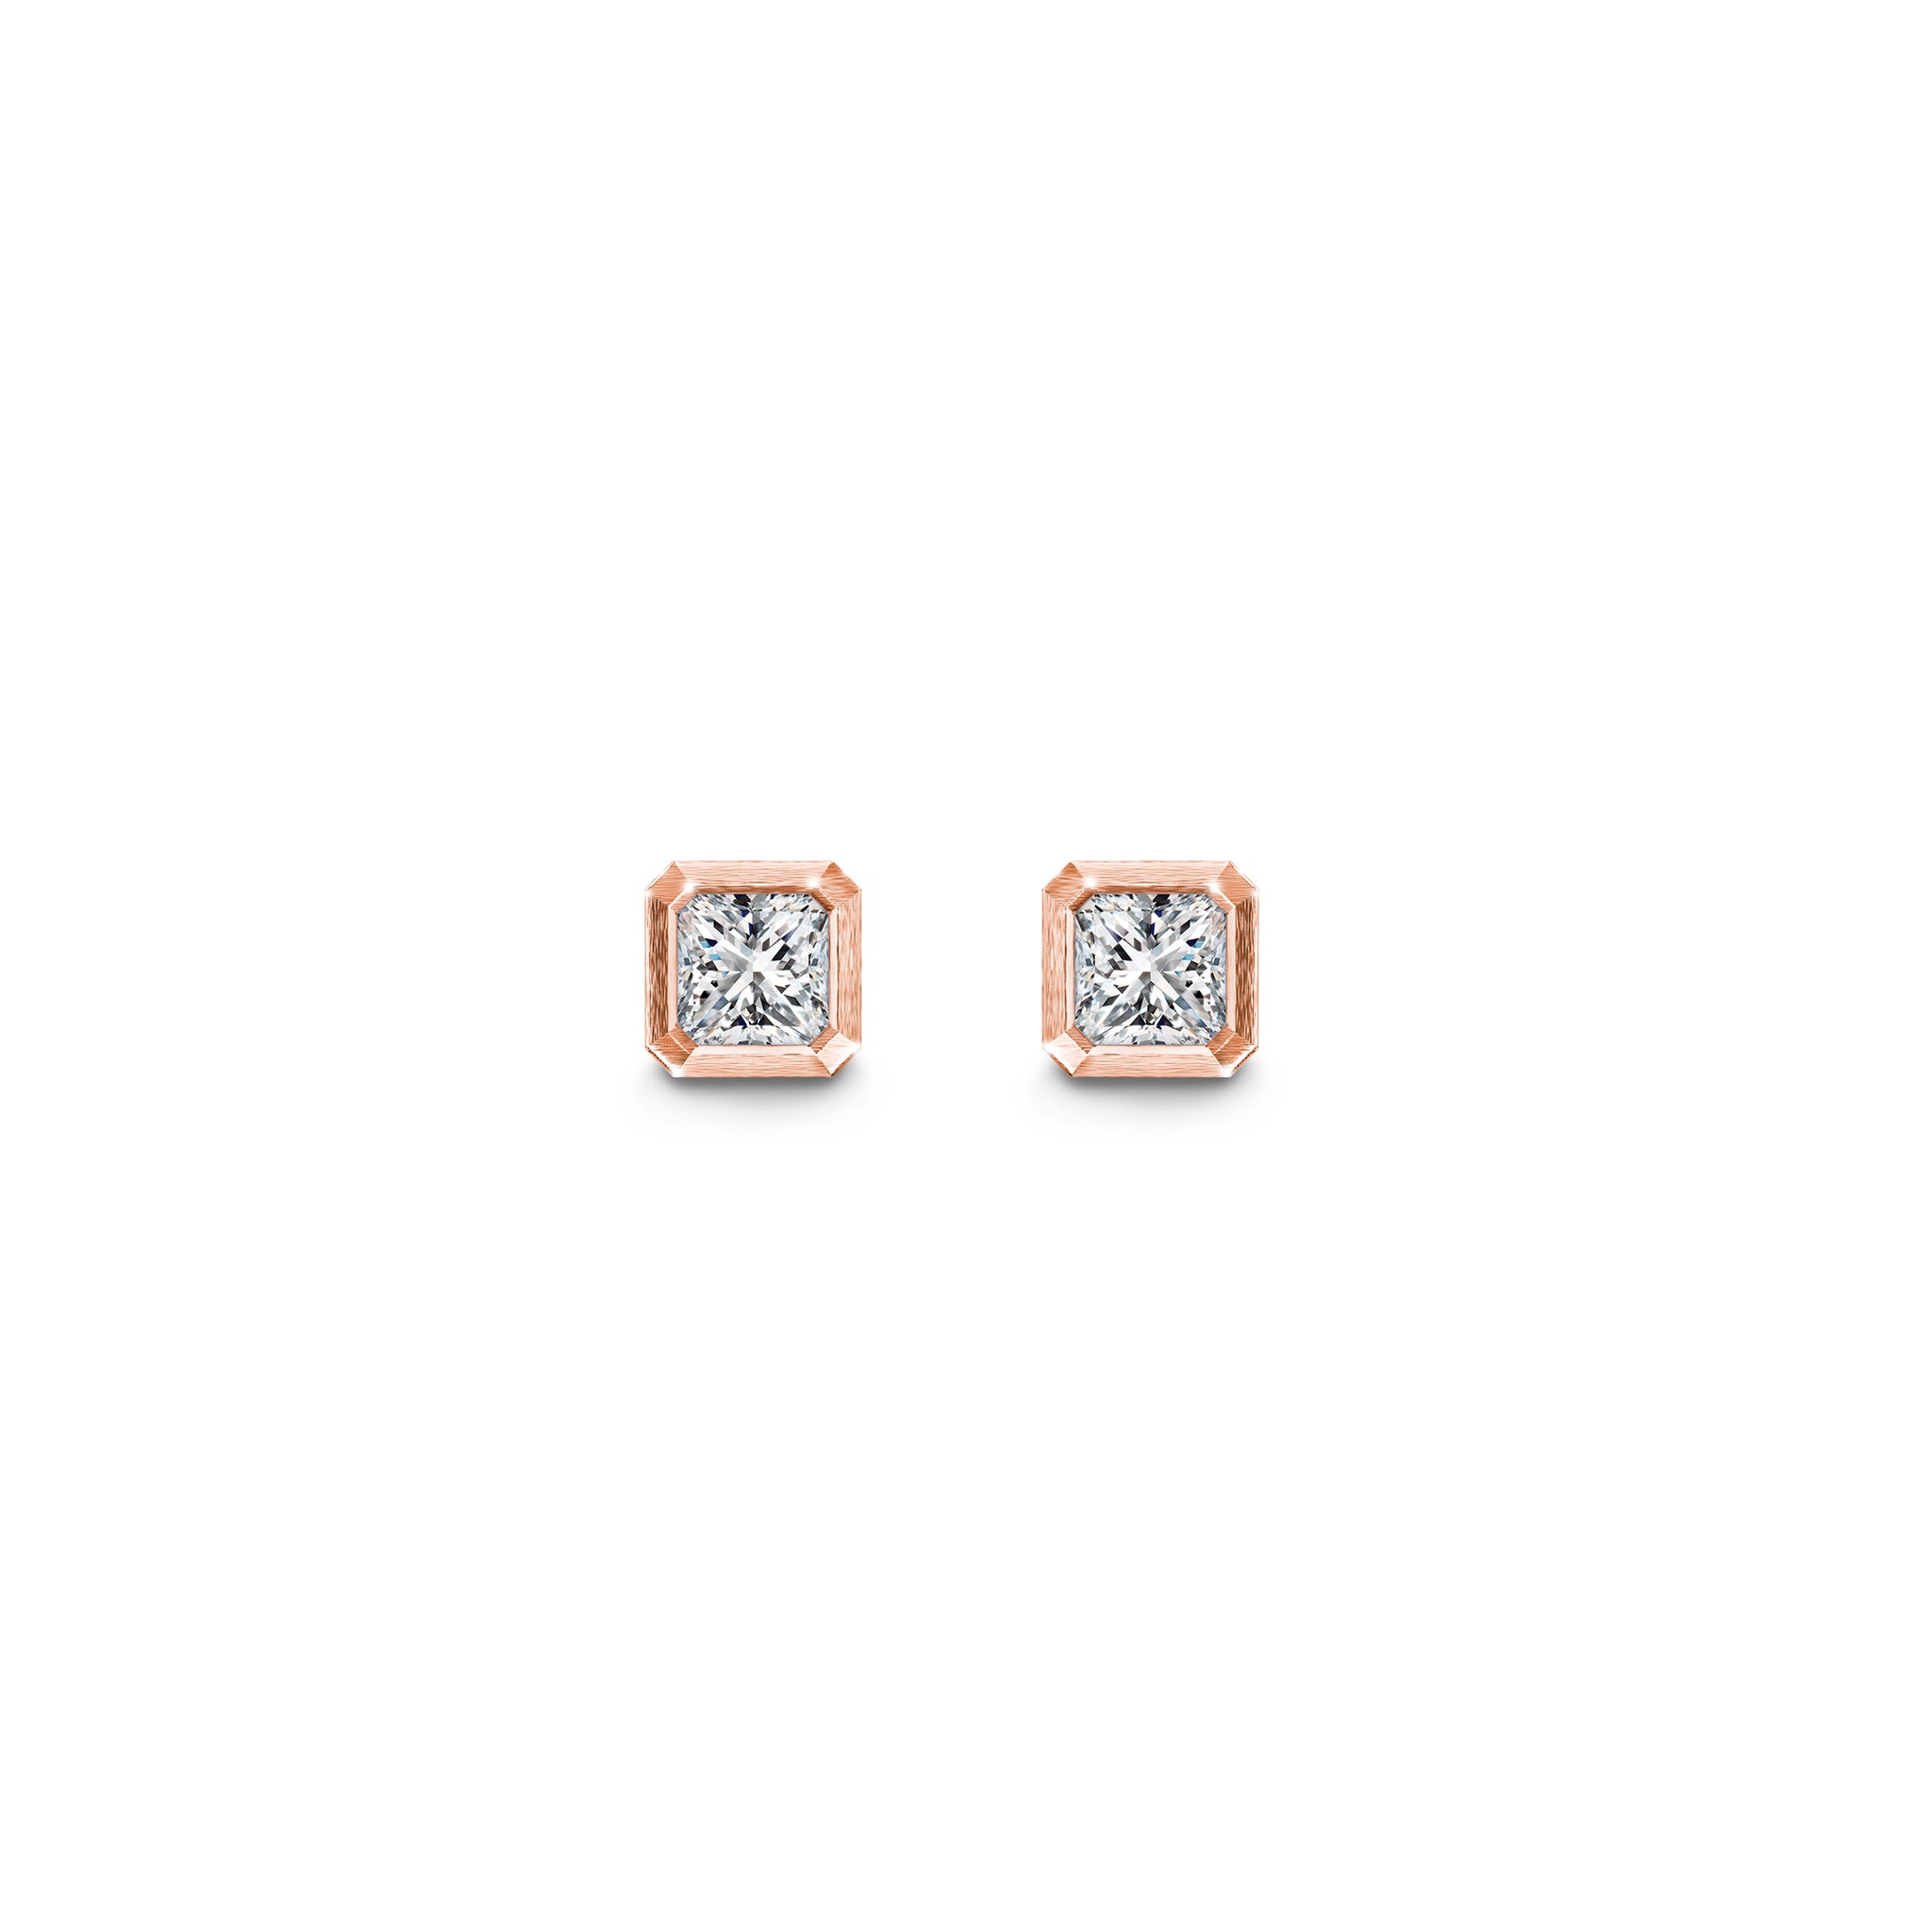 My Girl Diamond Solitaire Tube Set Earrings 0.27 Carat | Brushed 18K Rose Gold Shimansky